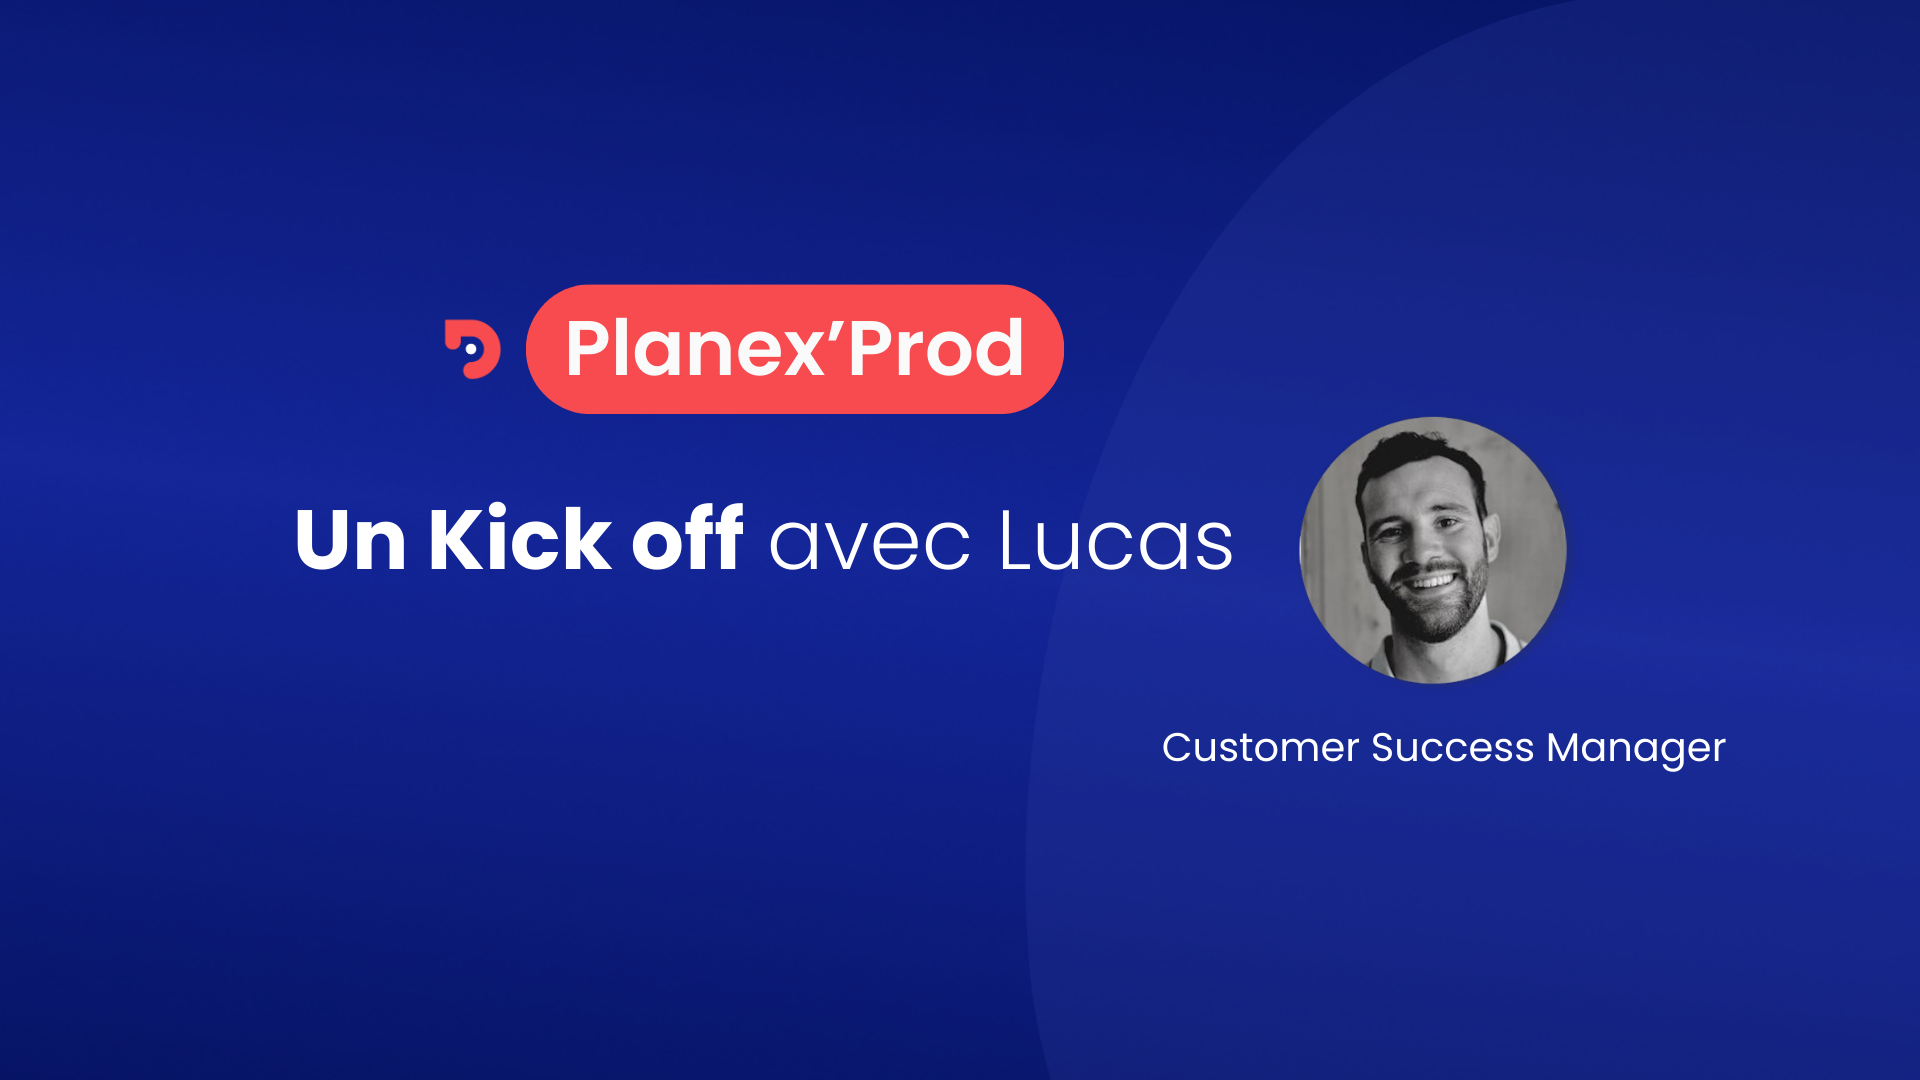 Visuel de la première page de la vidéo tuto Planex'Prod dédiée au Kick Off chez Planexpo. On y voit le mot Planex'Prod, Kick Off avec Lucas et la photo de Lucas avec son intitulé de poste : Customer Success Manager.